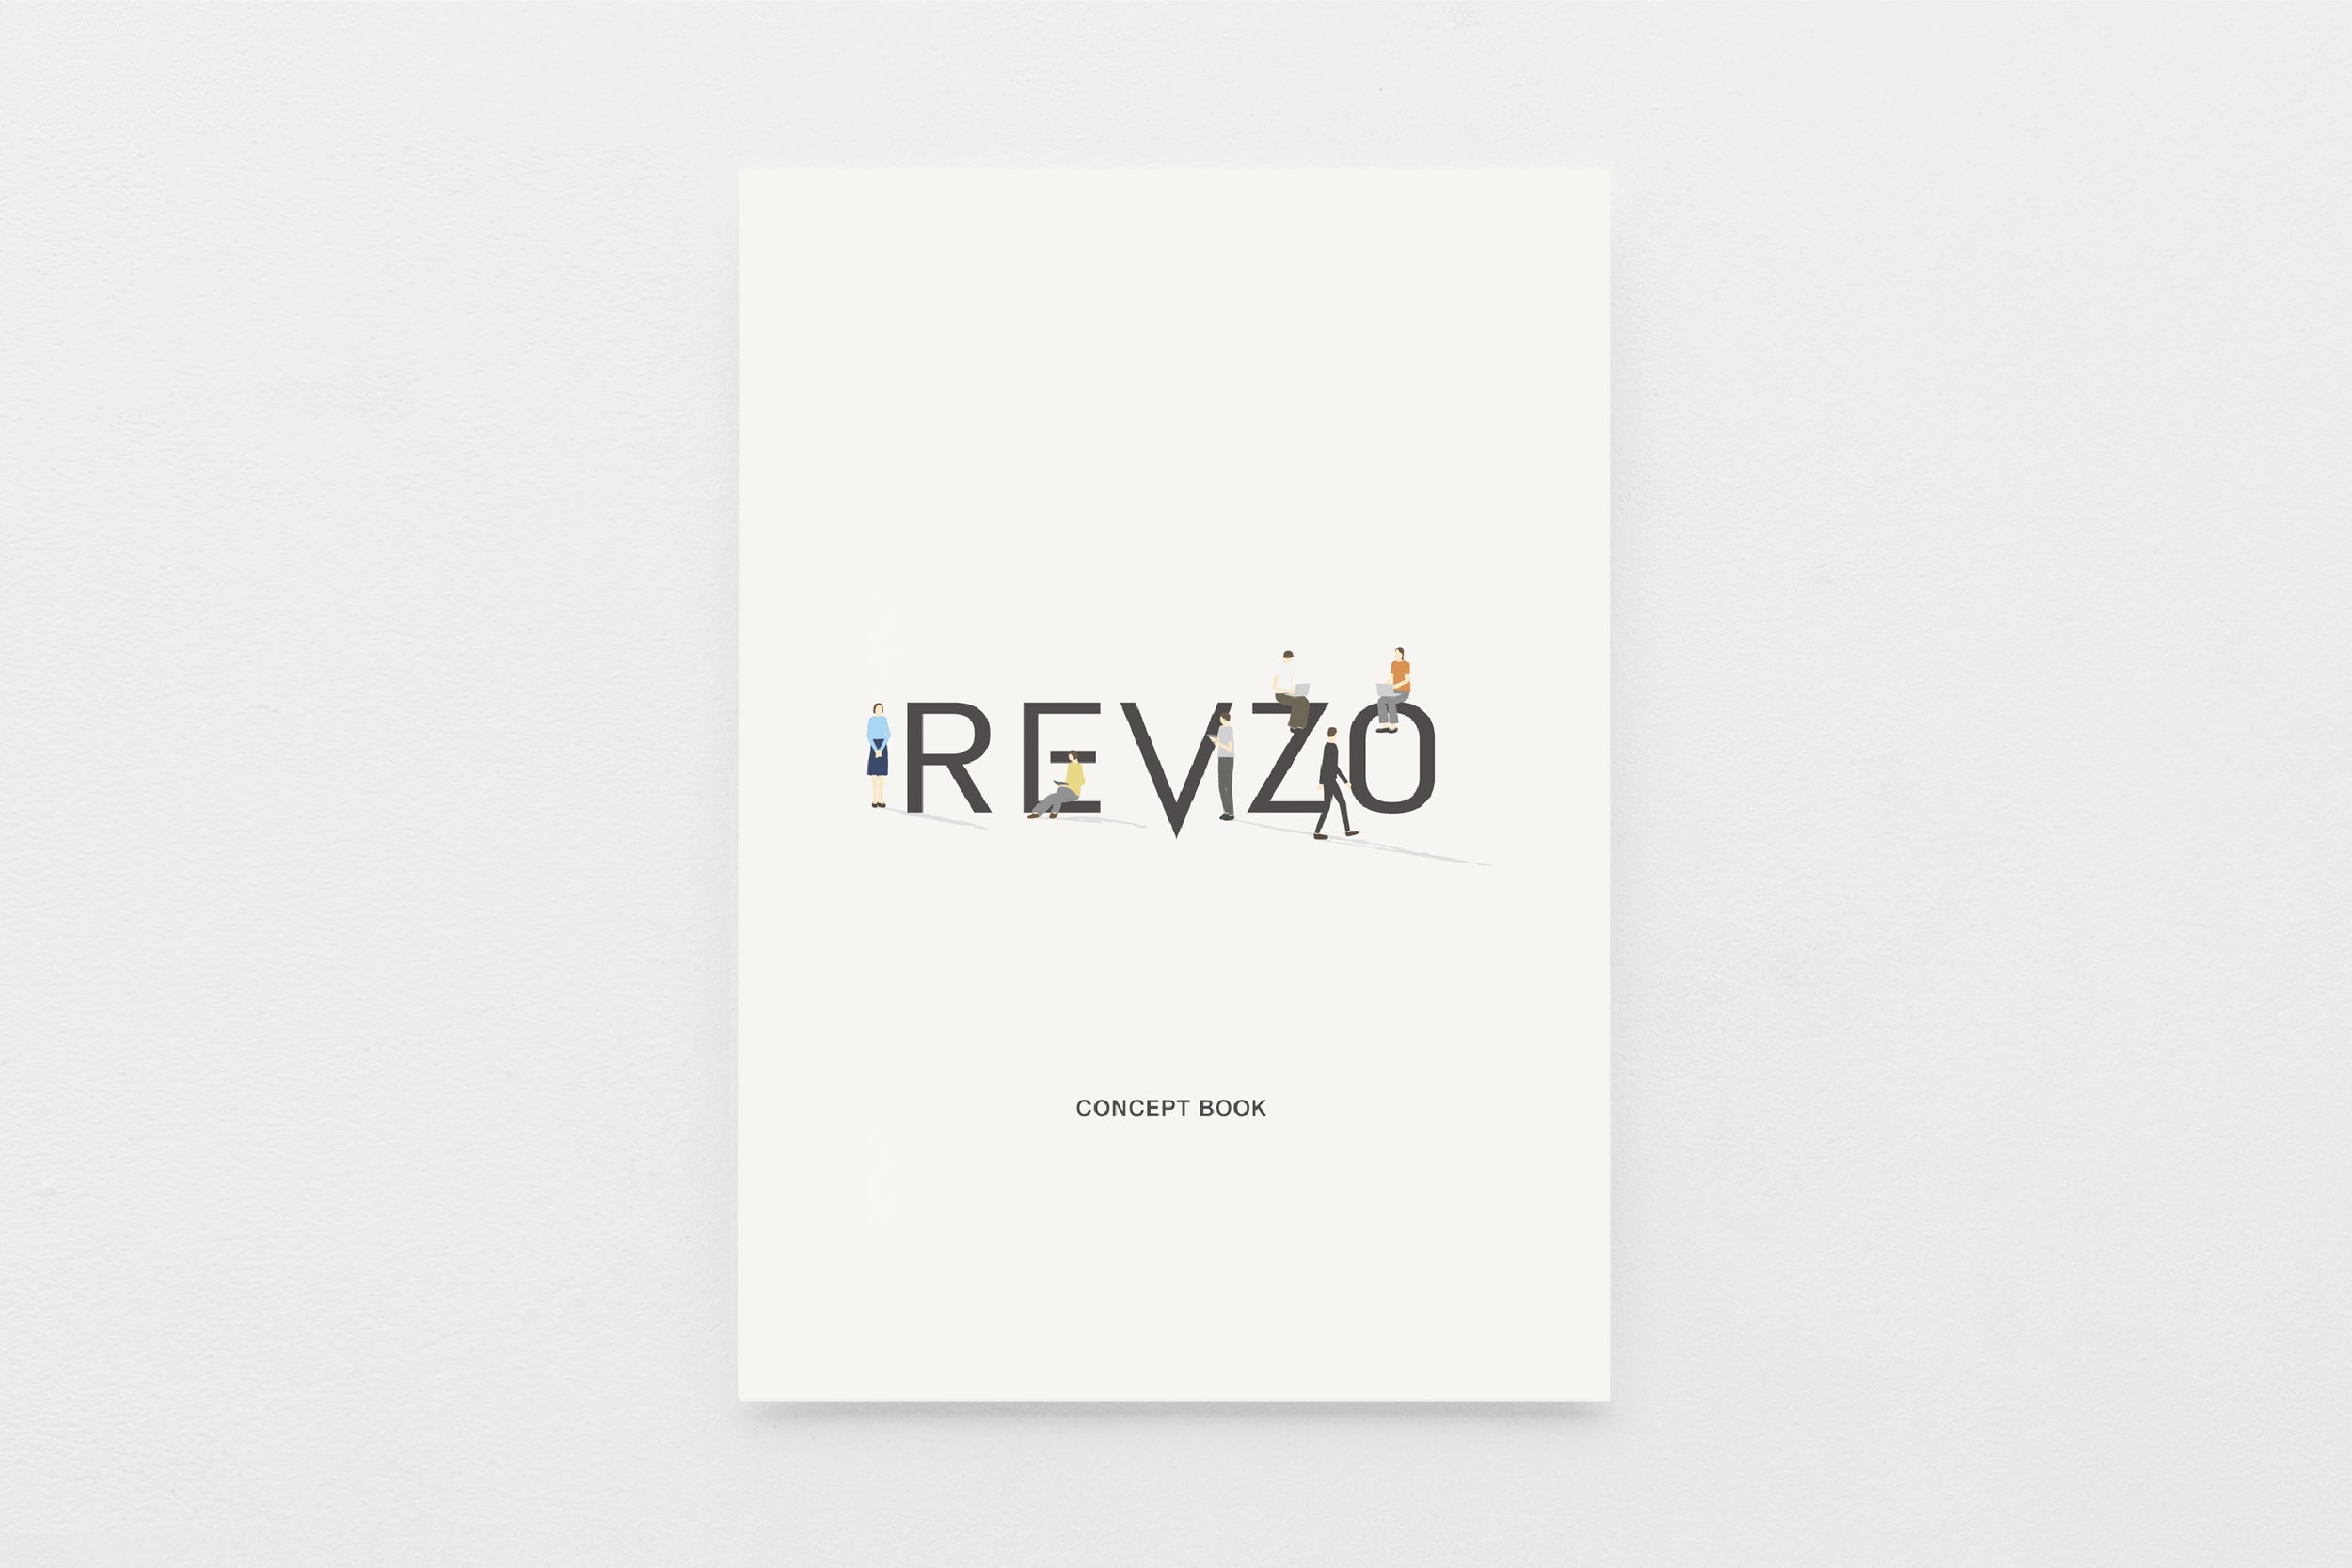 Revzo_concept book_h1.jpg